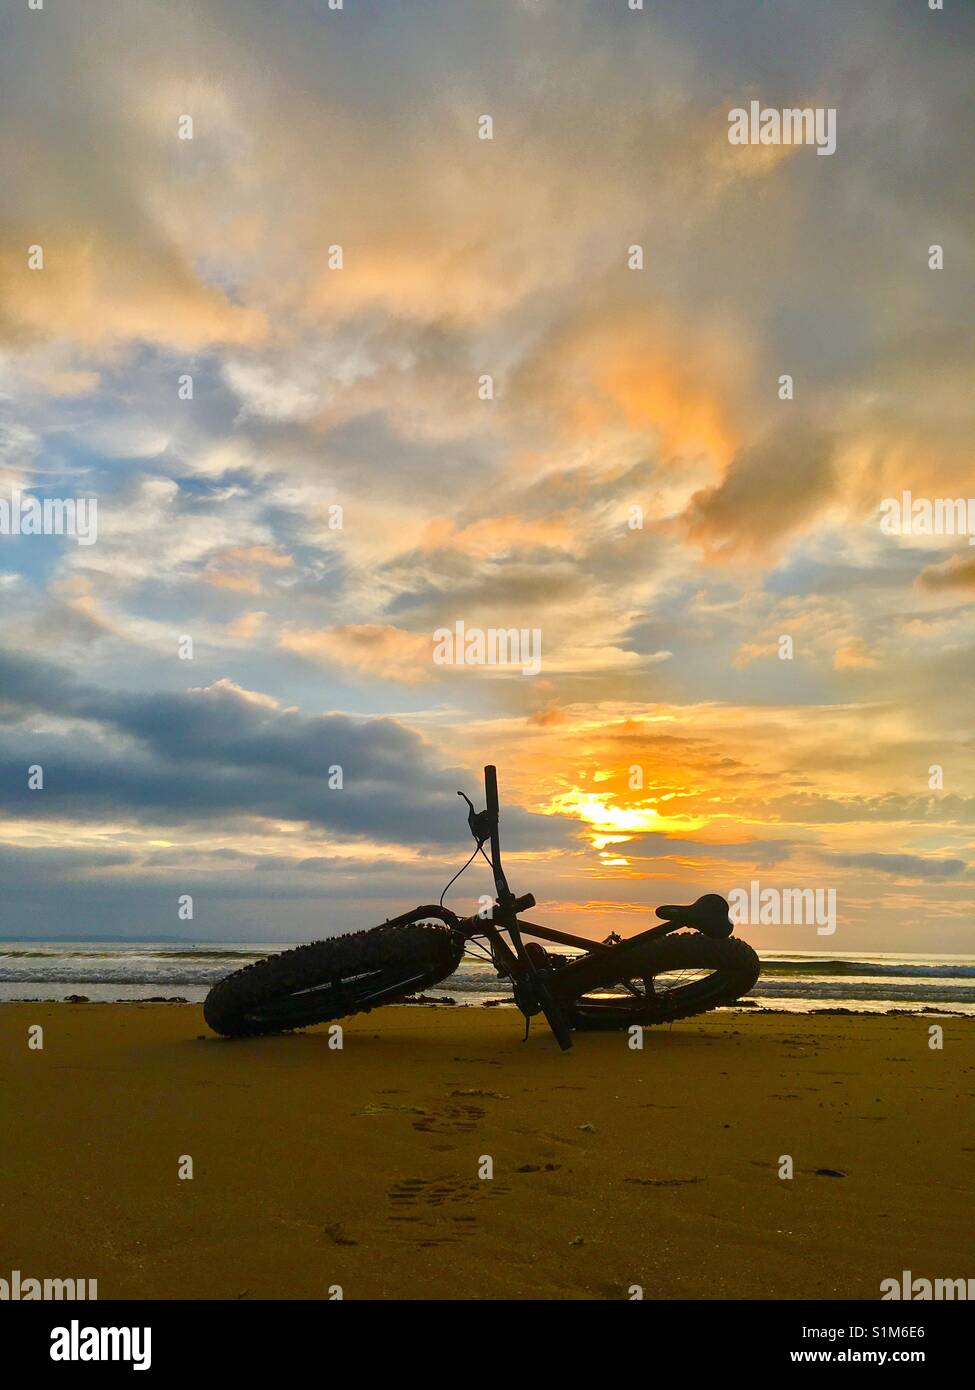 Spiaggia corsa. fatbike tramonto Foto Stock